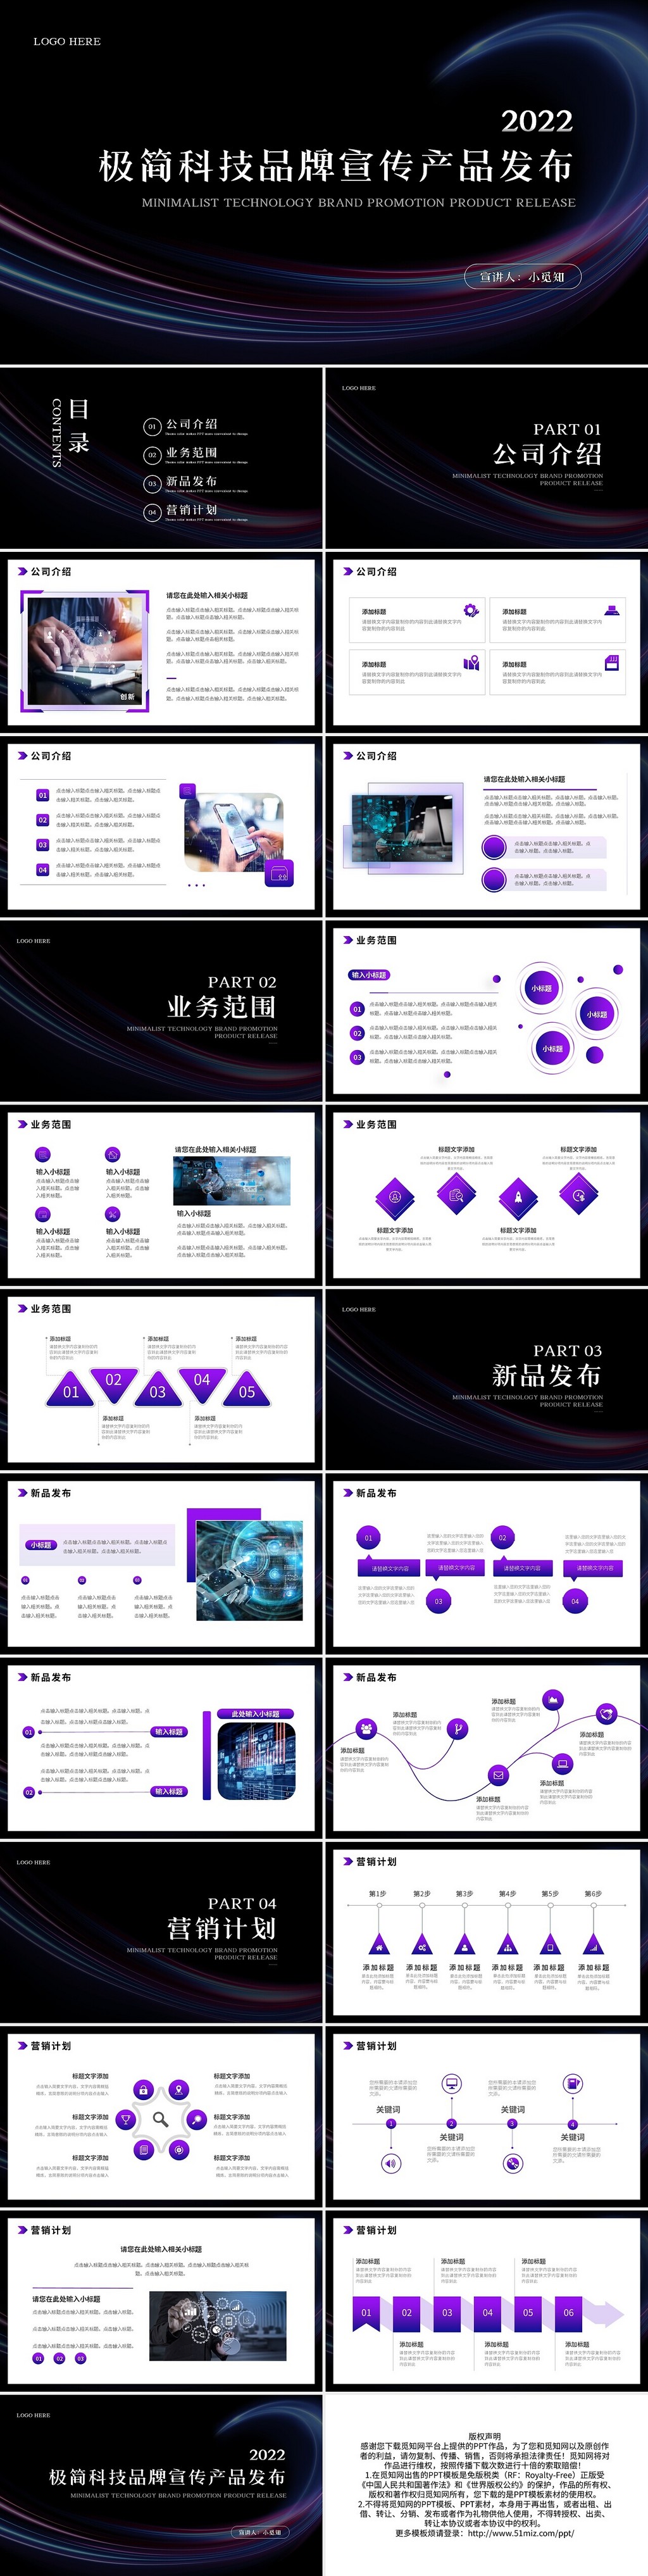 紫色极简科技品牌宣传产品发布PPT模板宣传PPT动态PPT